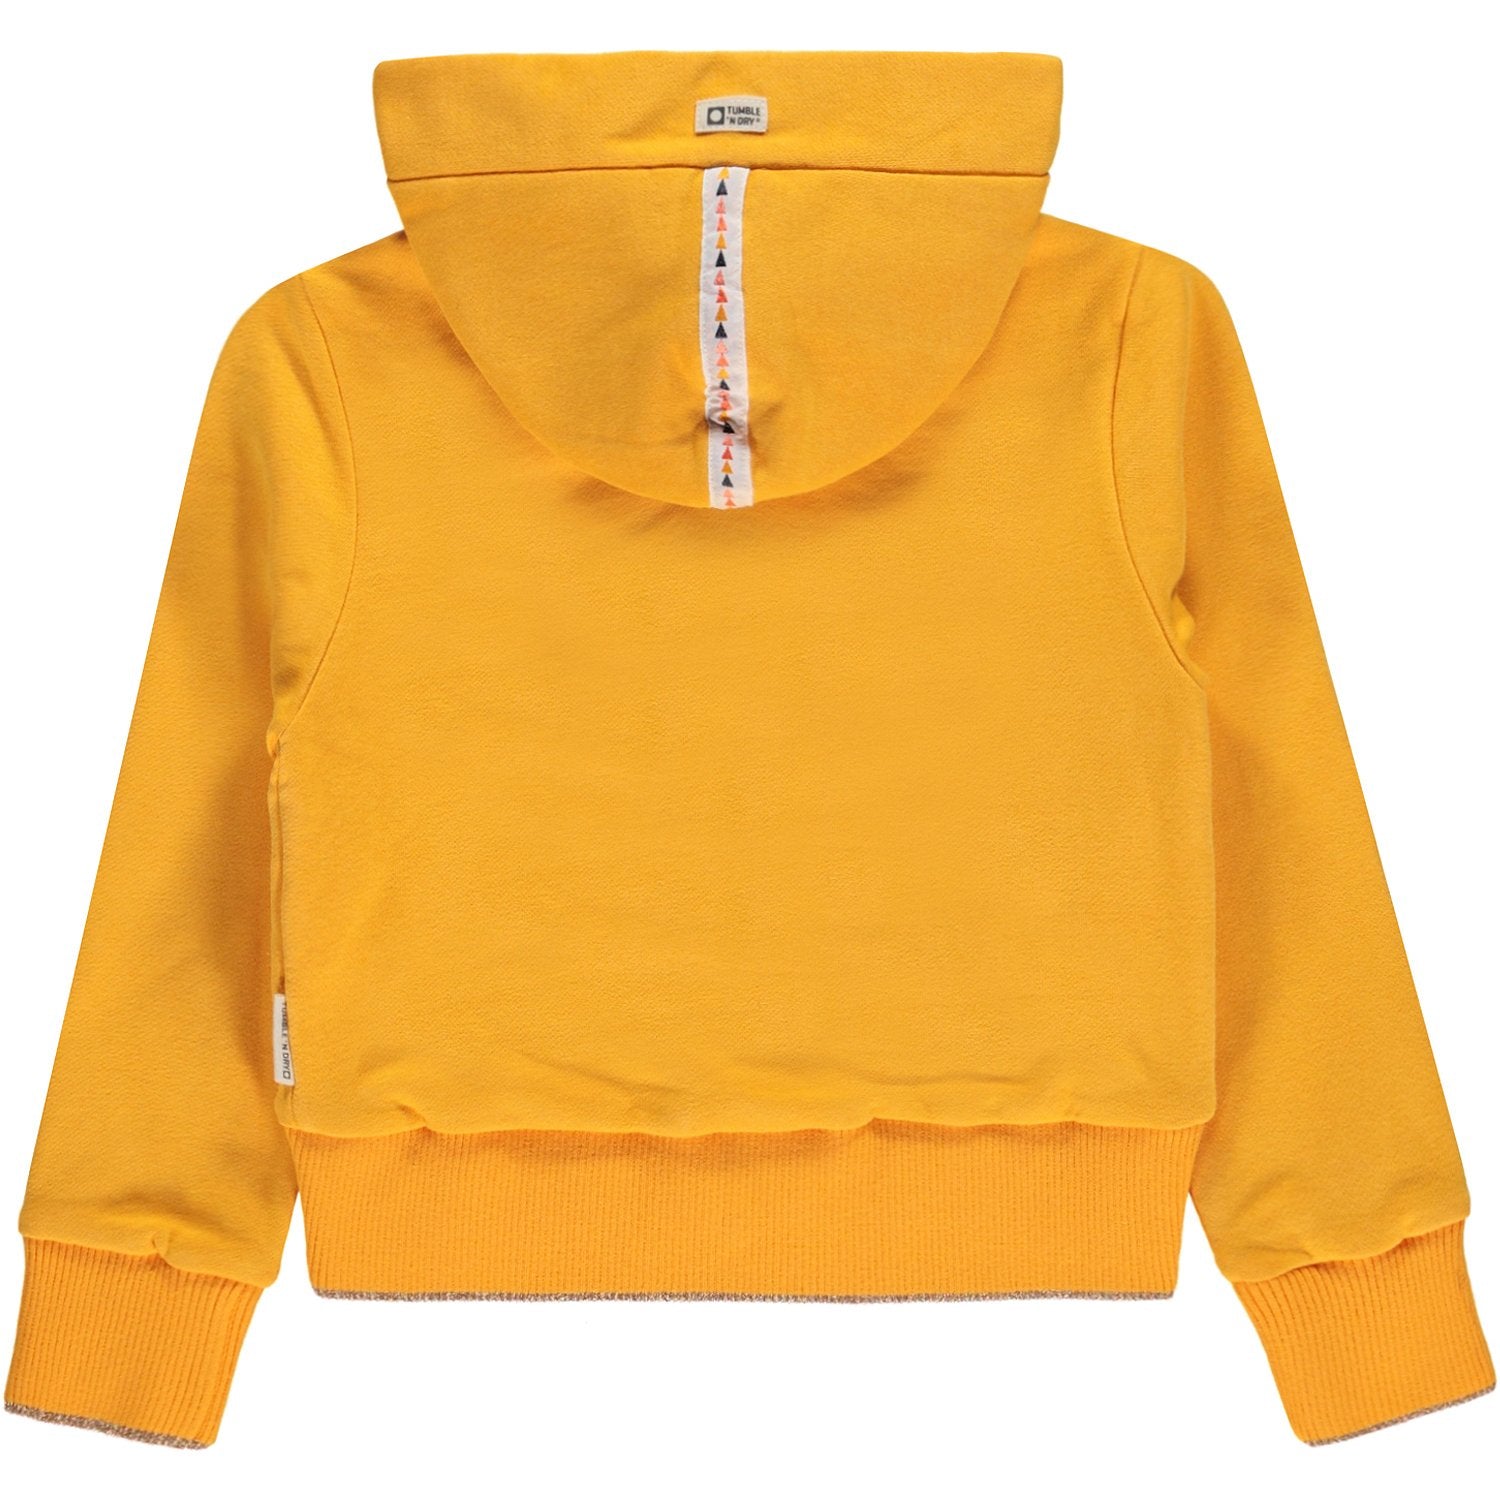 Meisjes Sweat Vest hood van Tumble 'n Dry in de kleur Saffron in maat 134/140.